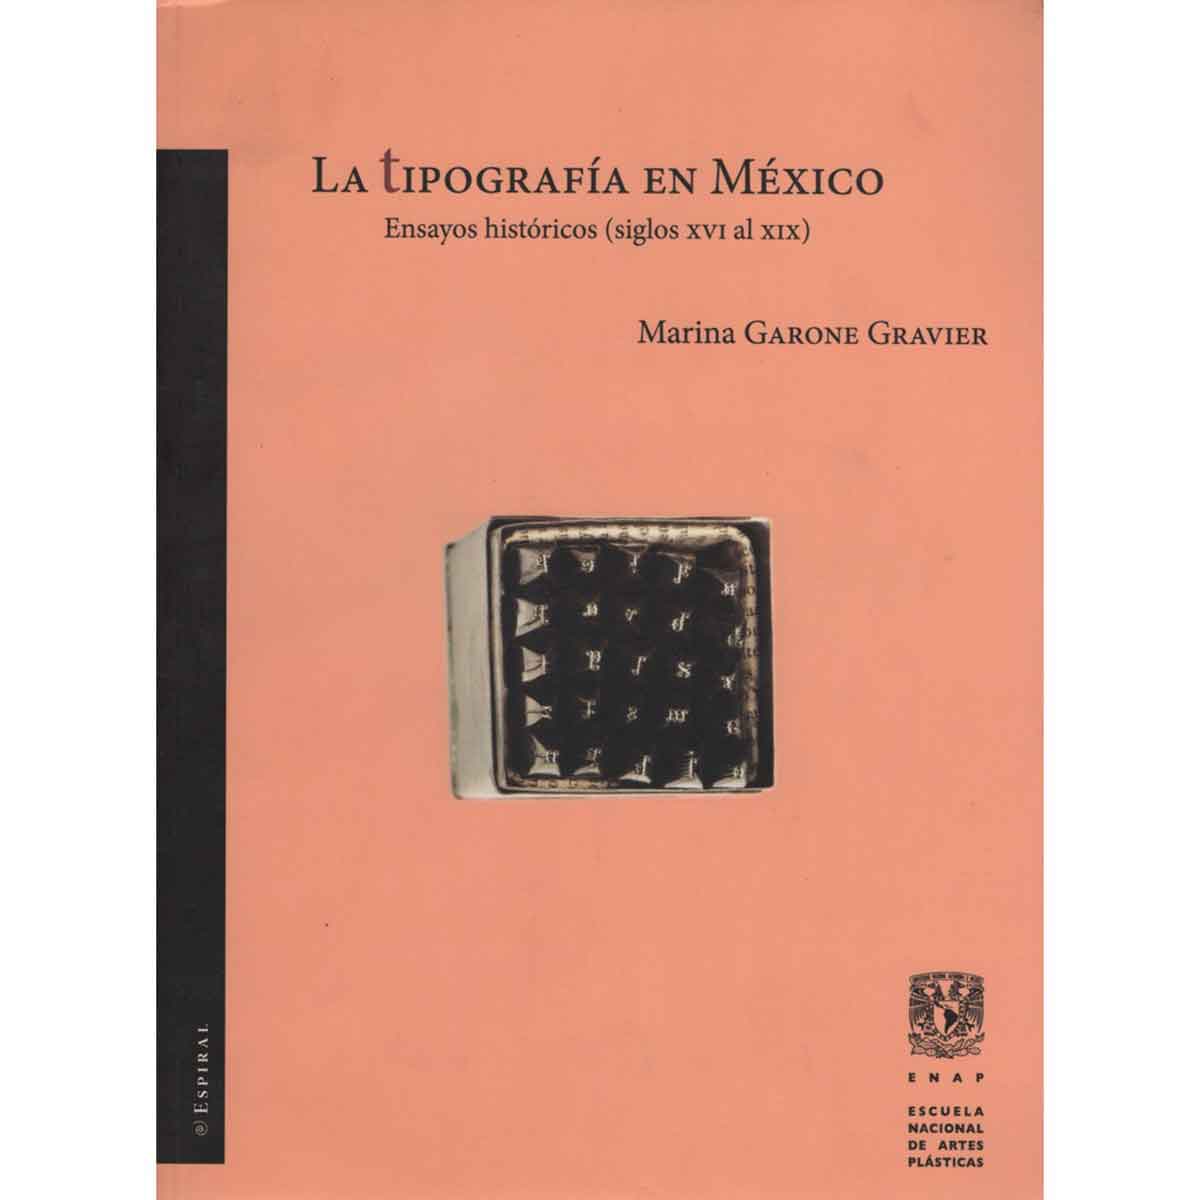 LA TIPOGRAFÍA EN MÉXICO. ENSAYOS HISTÓRICOS (SIGLOS XVI AL XIX)